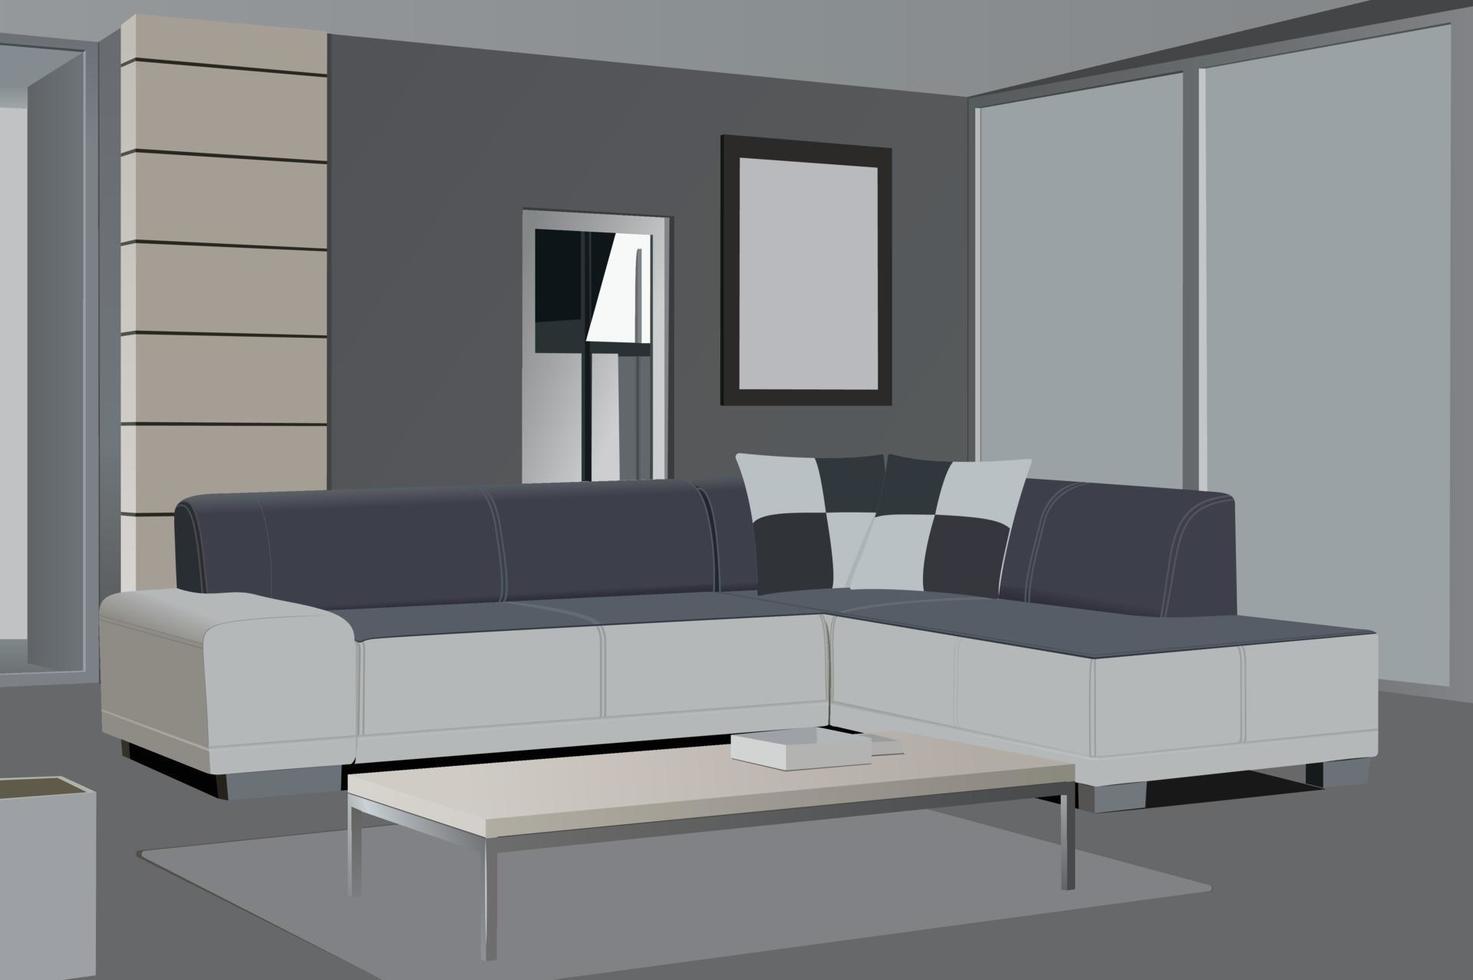 Wohnzimmer realistisches Design mit modernem Heimkinosystem. innenhintergrund mit möbellounge und sofavektorillustration. vektor